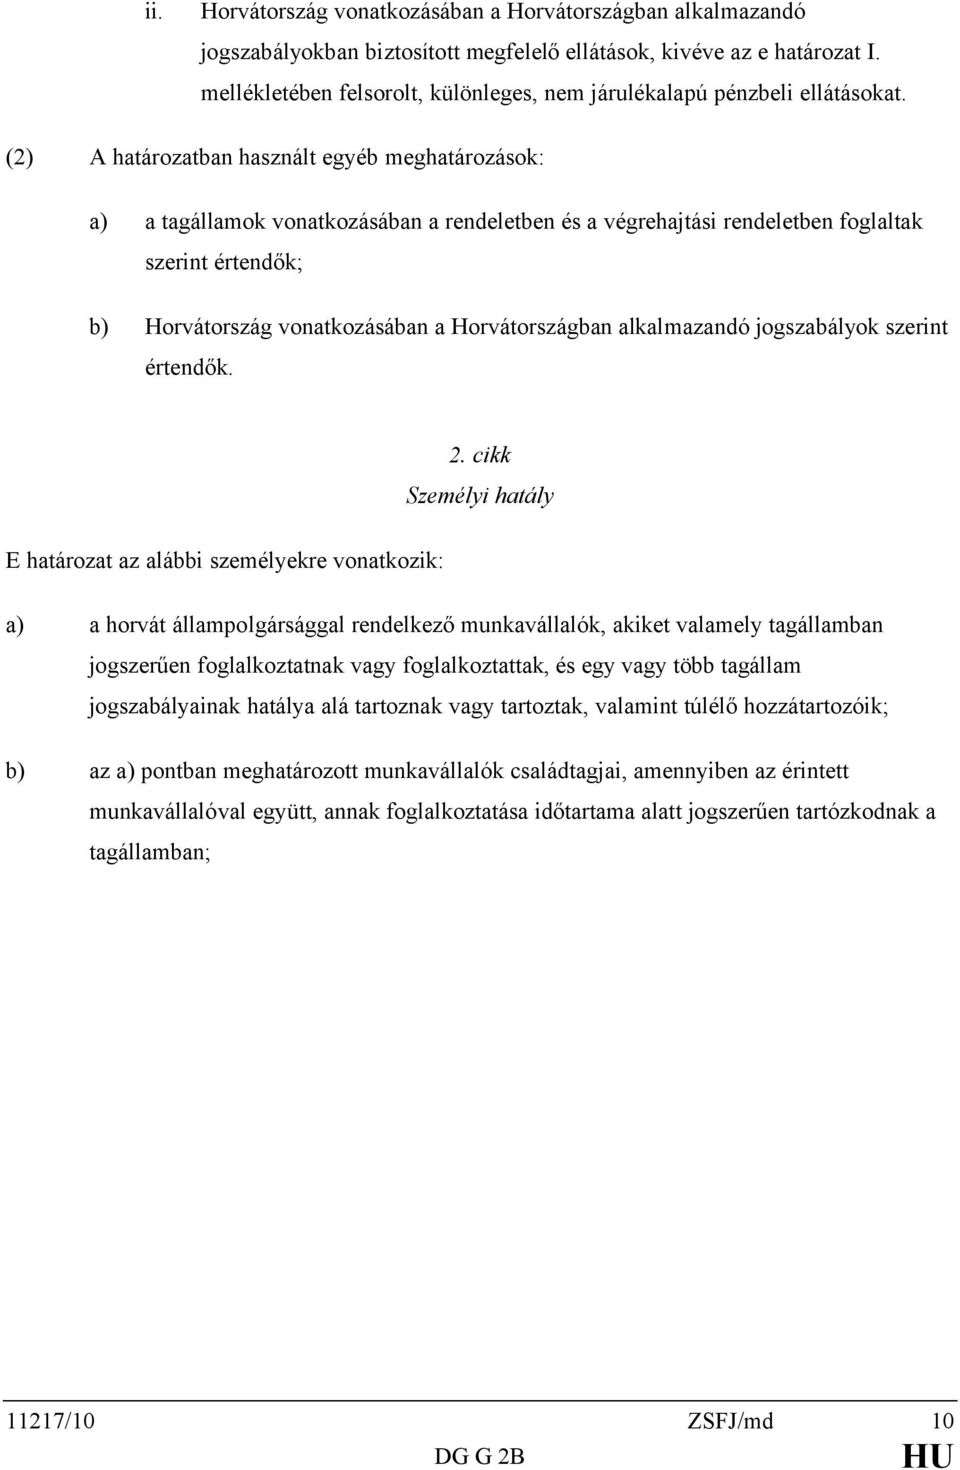 (2) A határozatban használt egyéb meghatározások: a) a tagállamok vonatkozásában a rendeletben és a végrehajtási rendeletben foglaltak szerint értendők; b) Horvátország vonatkozásában a